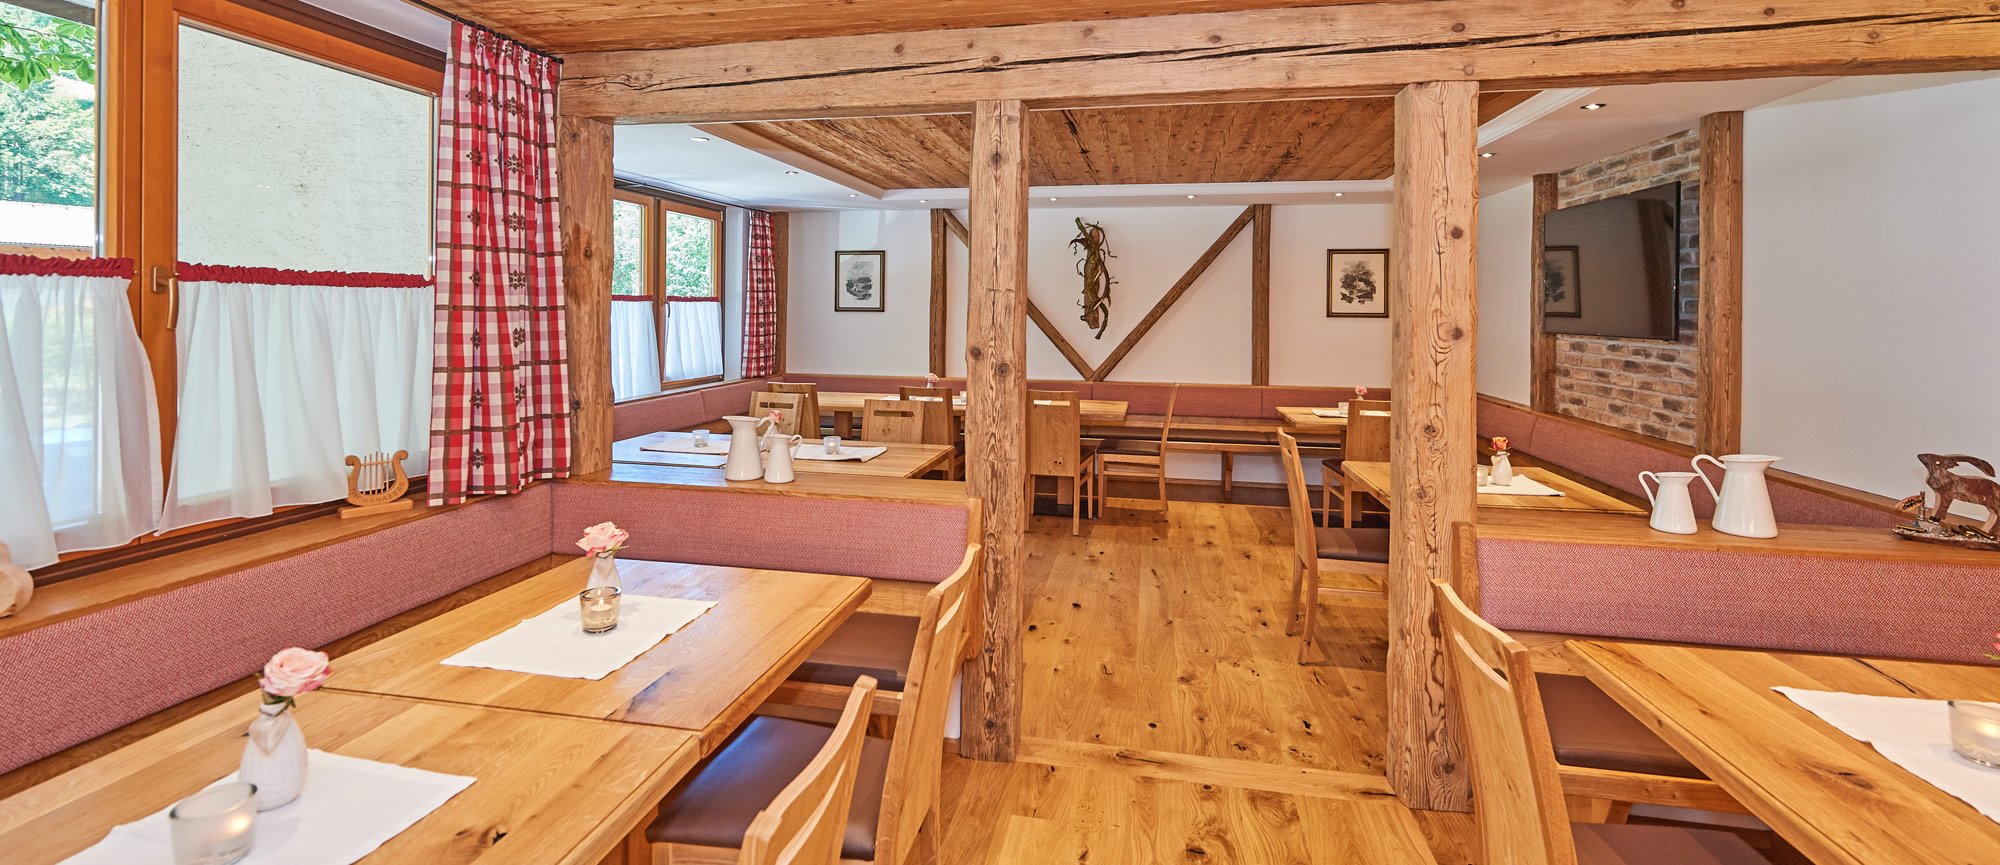 Gemütliche Gaststube im Hotel Gashof Alpenhof in Annaberg